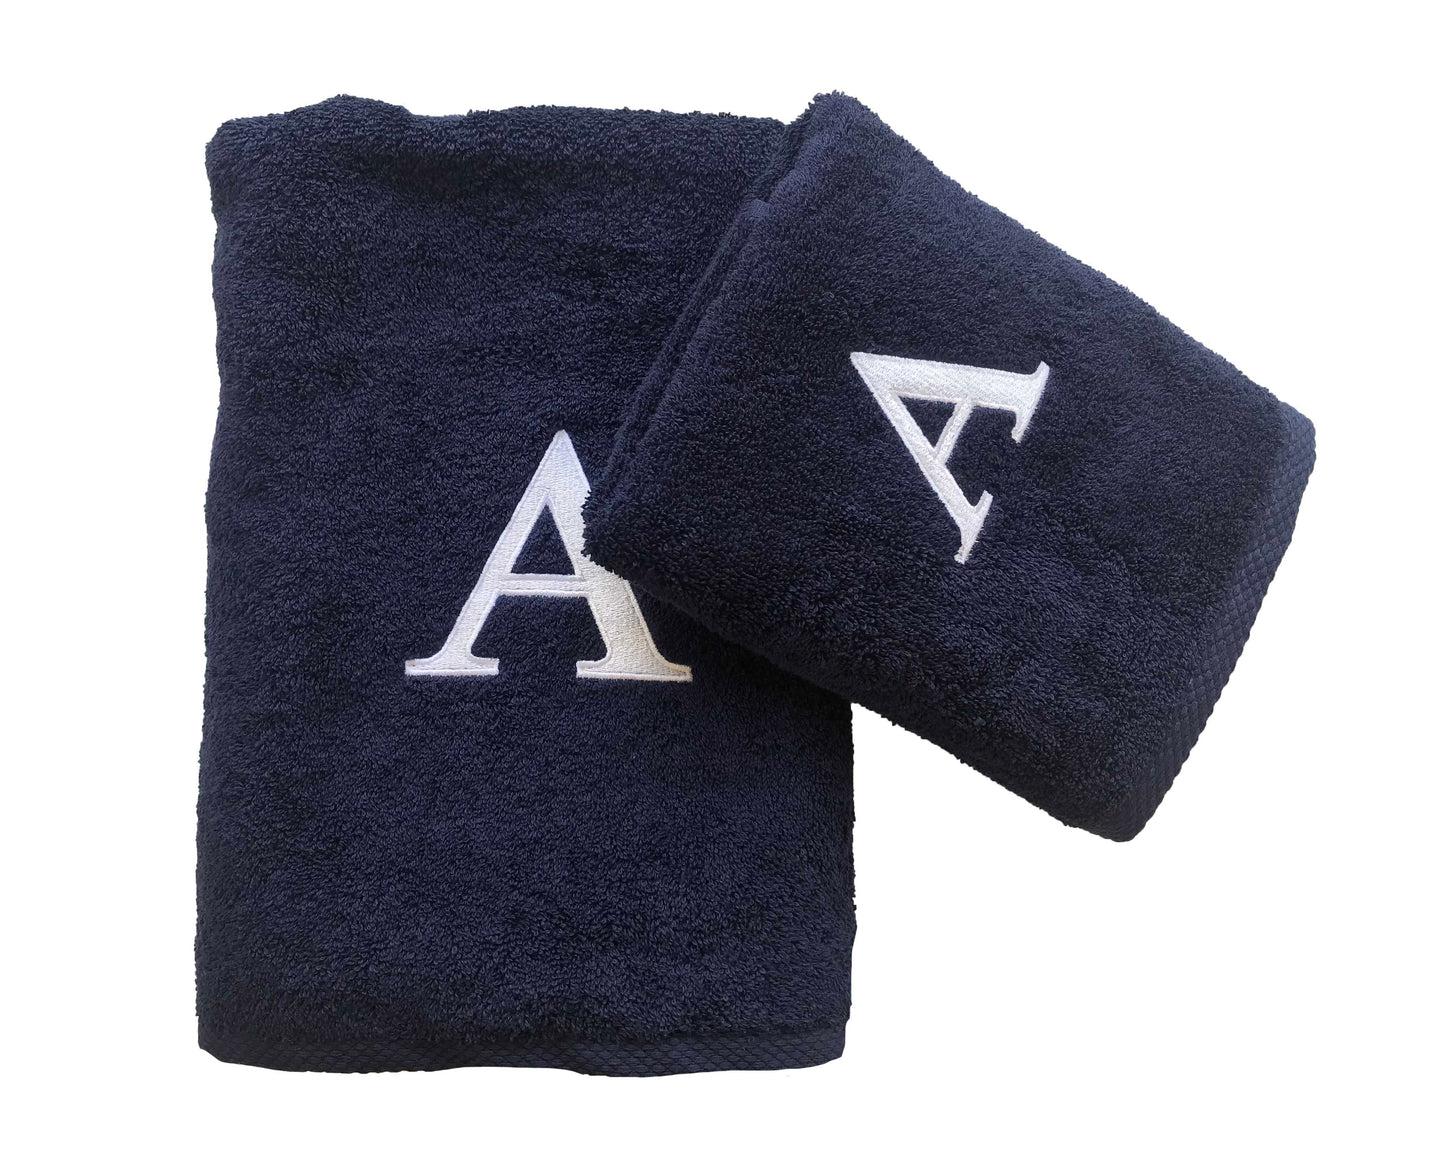 Premium Handtuch -  Mit edler Stickerei Buchstabe "A" - Vielseitig, Nachhaltig, Saugstark & Schnelltrocknend - 100% Baumwolle  LMS-6642 Marinenblau